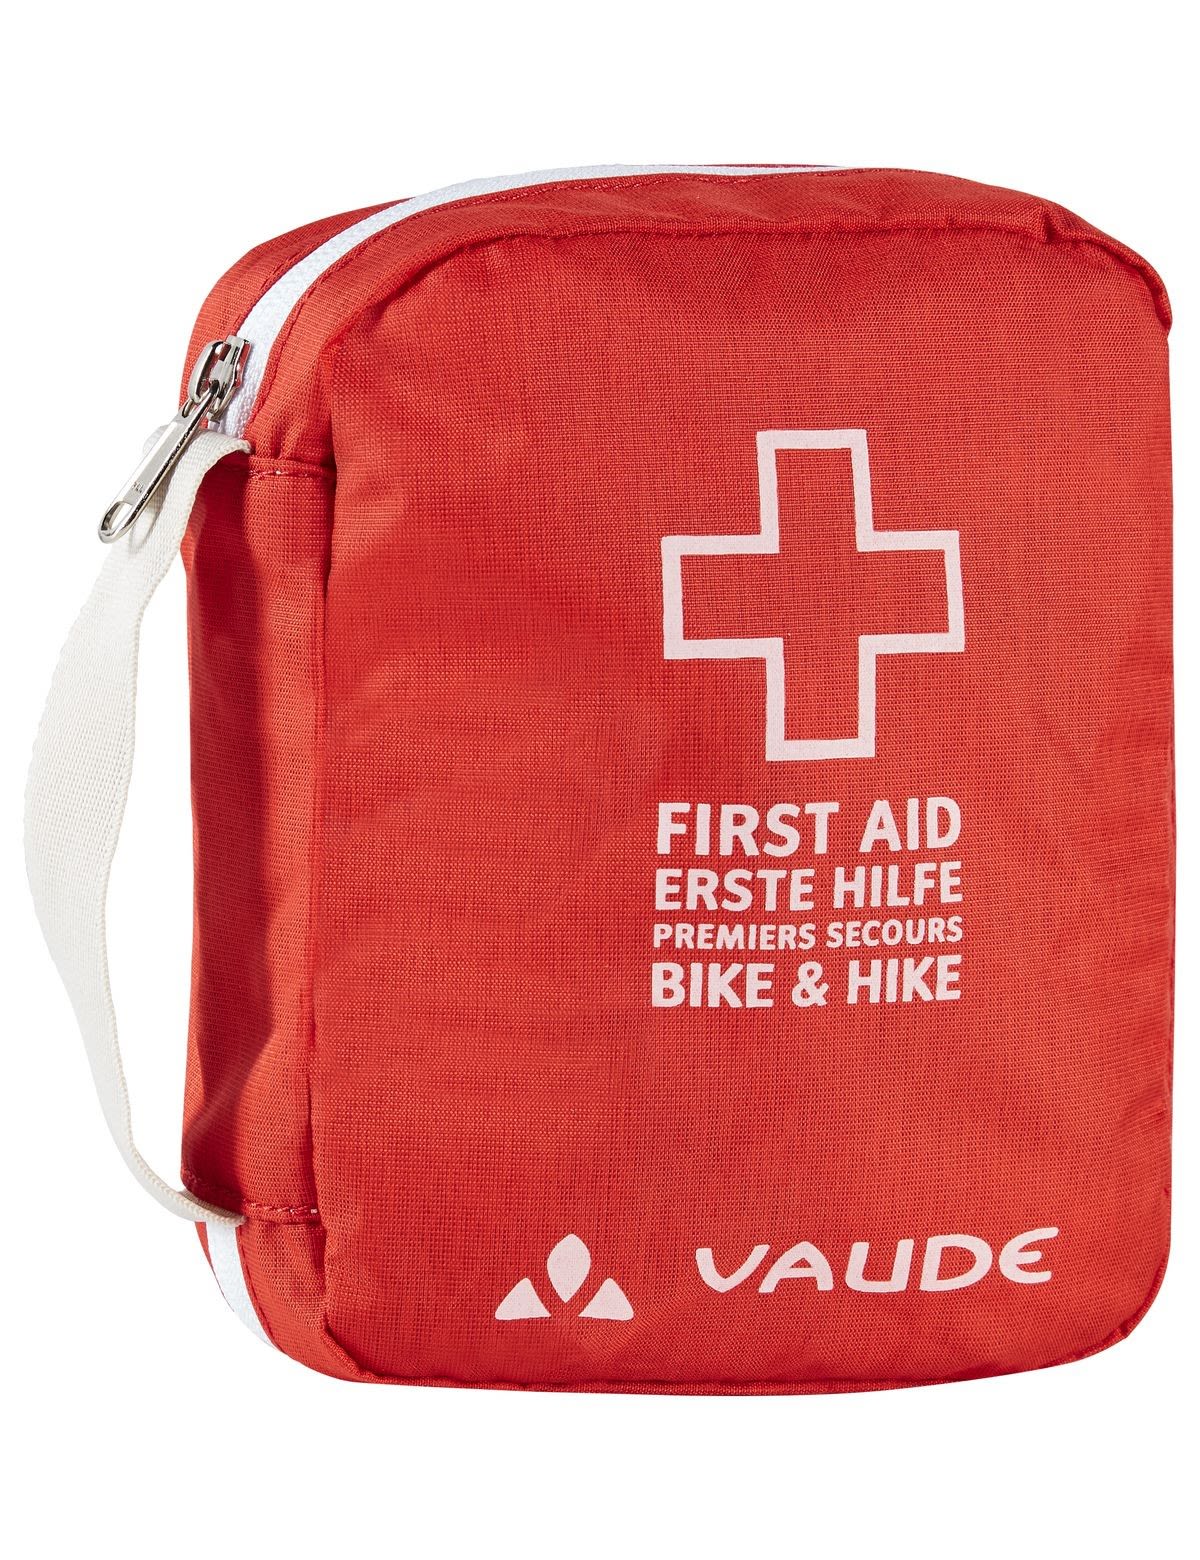 Vaude First AID KIt L Rot- Erste Hilfe und Notfallausrstung- Grsse One Size - Farbe Mars Red unter Vaude